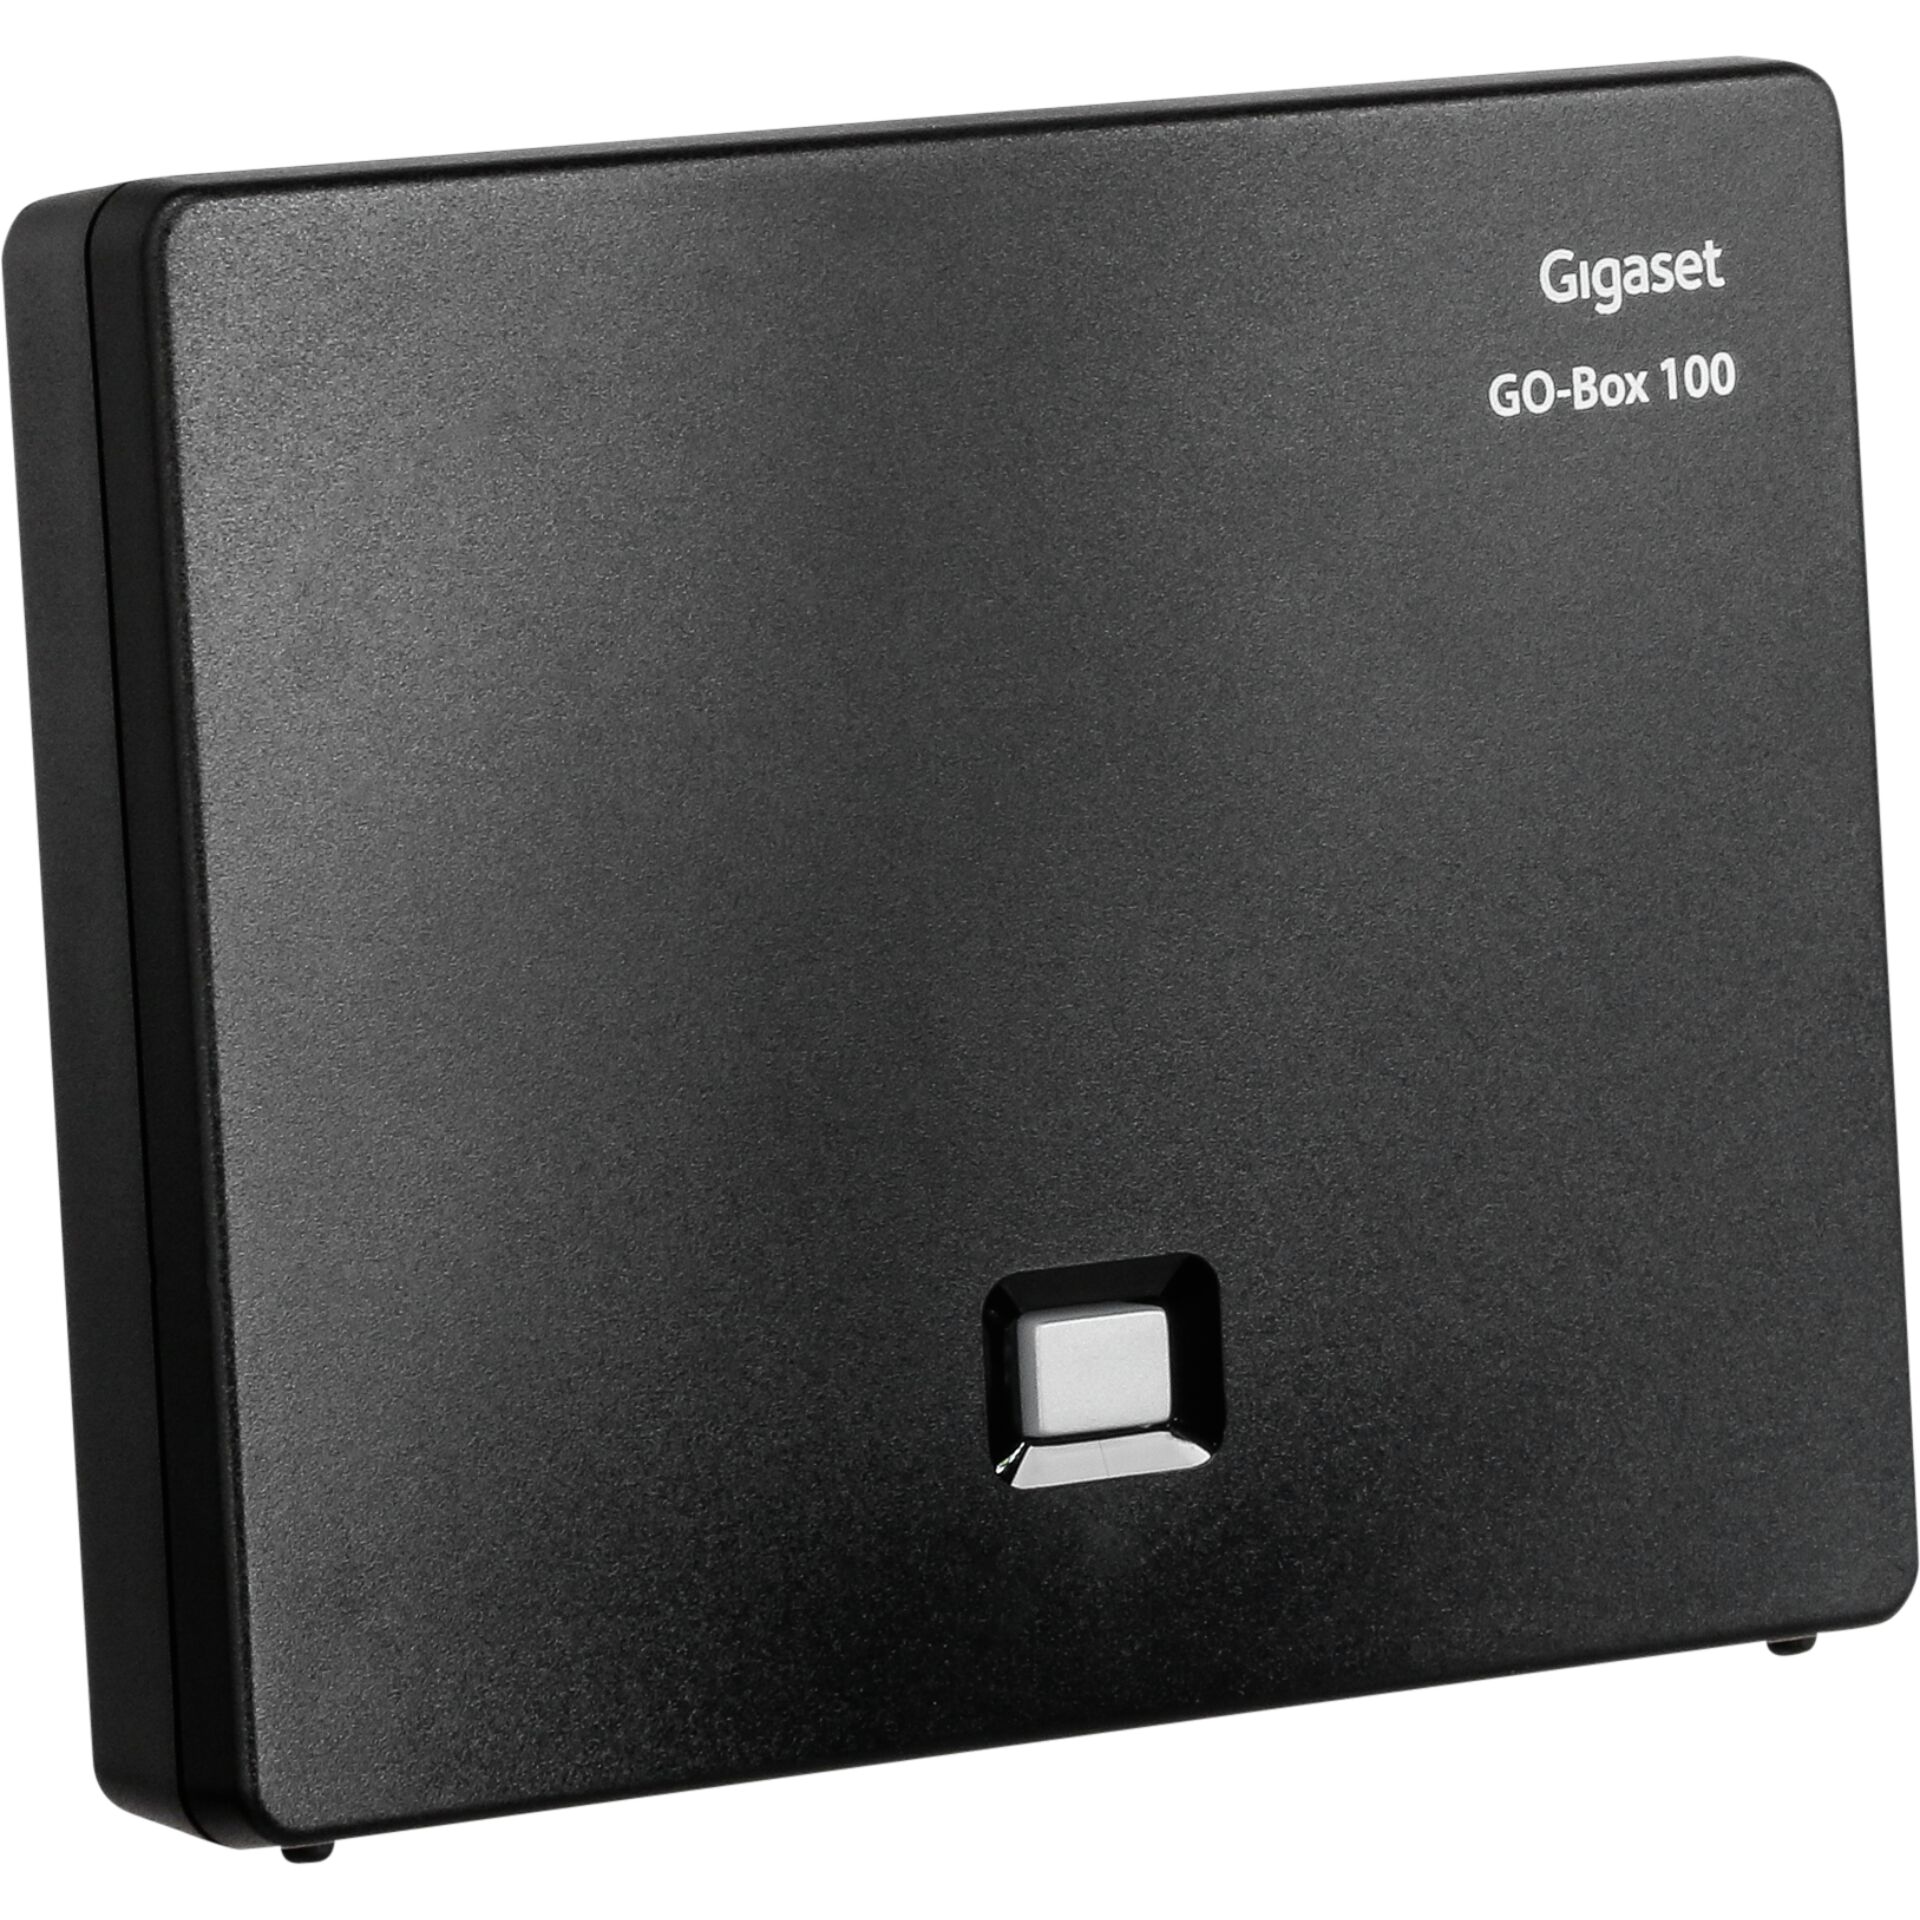 Gigaset -GO Box für VoIP-Telefon schnurloses -dreiweg DECTGAPCAT-iq -Basisstation Accessories 100 -ECO / -Gigaset -Anrufbeantworter Telefon Anruffunkti